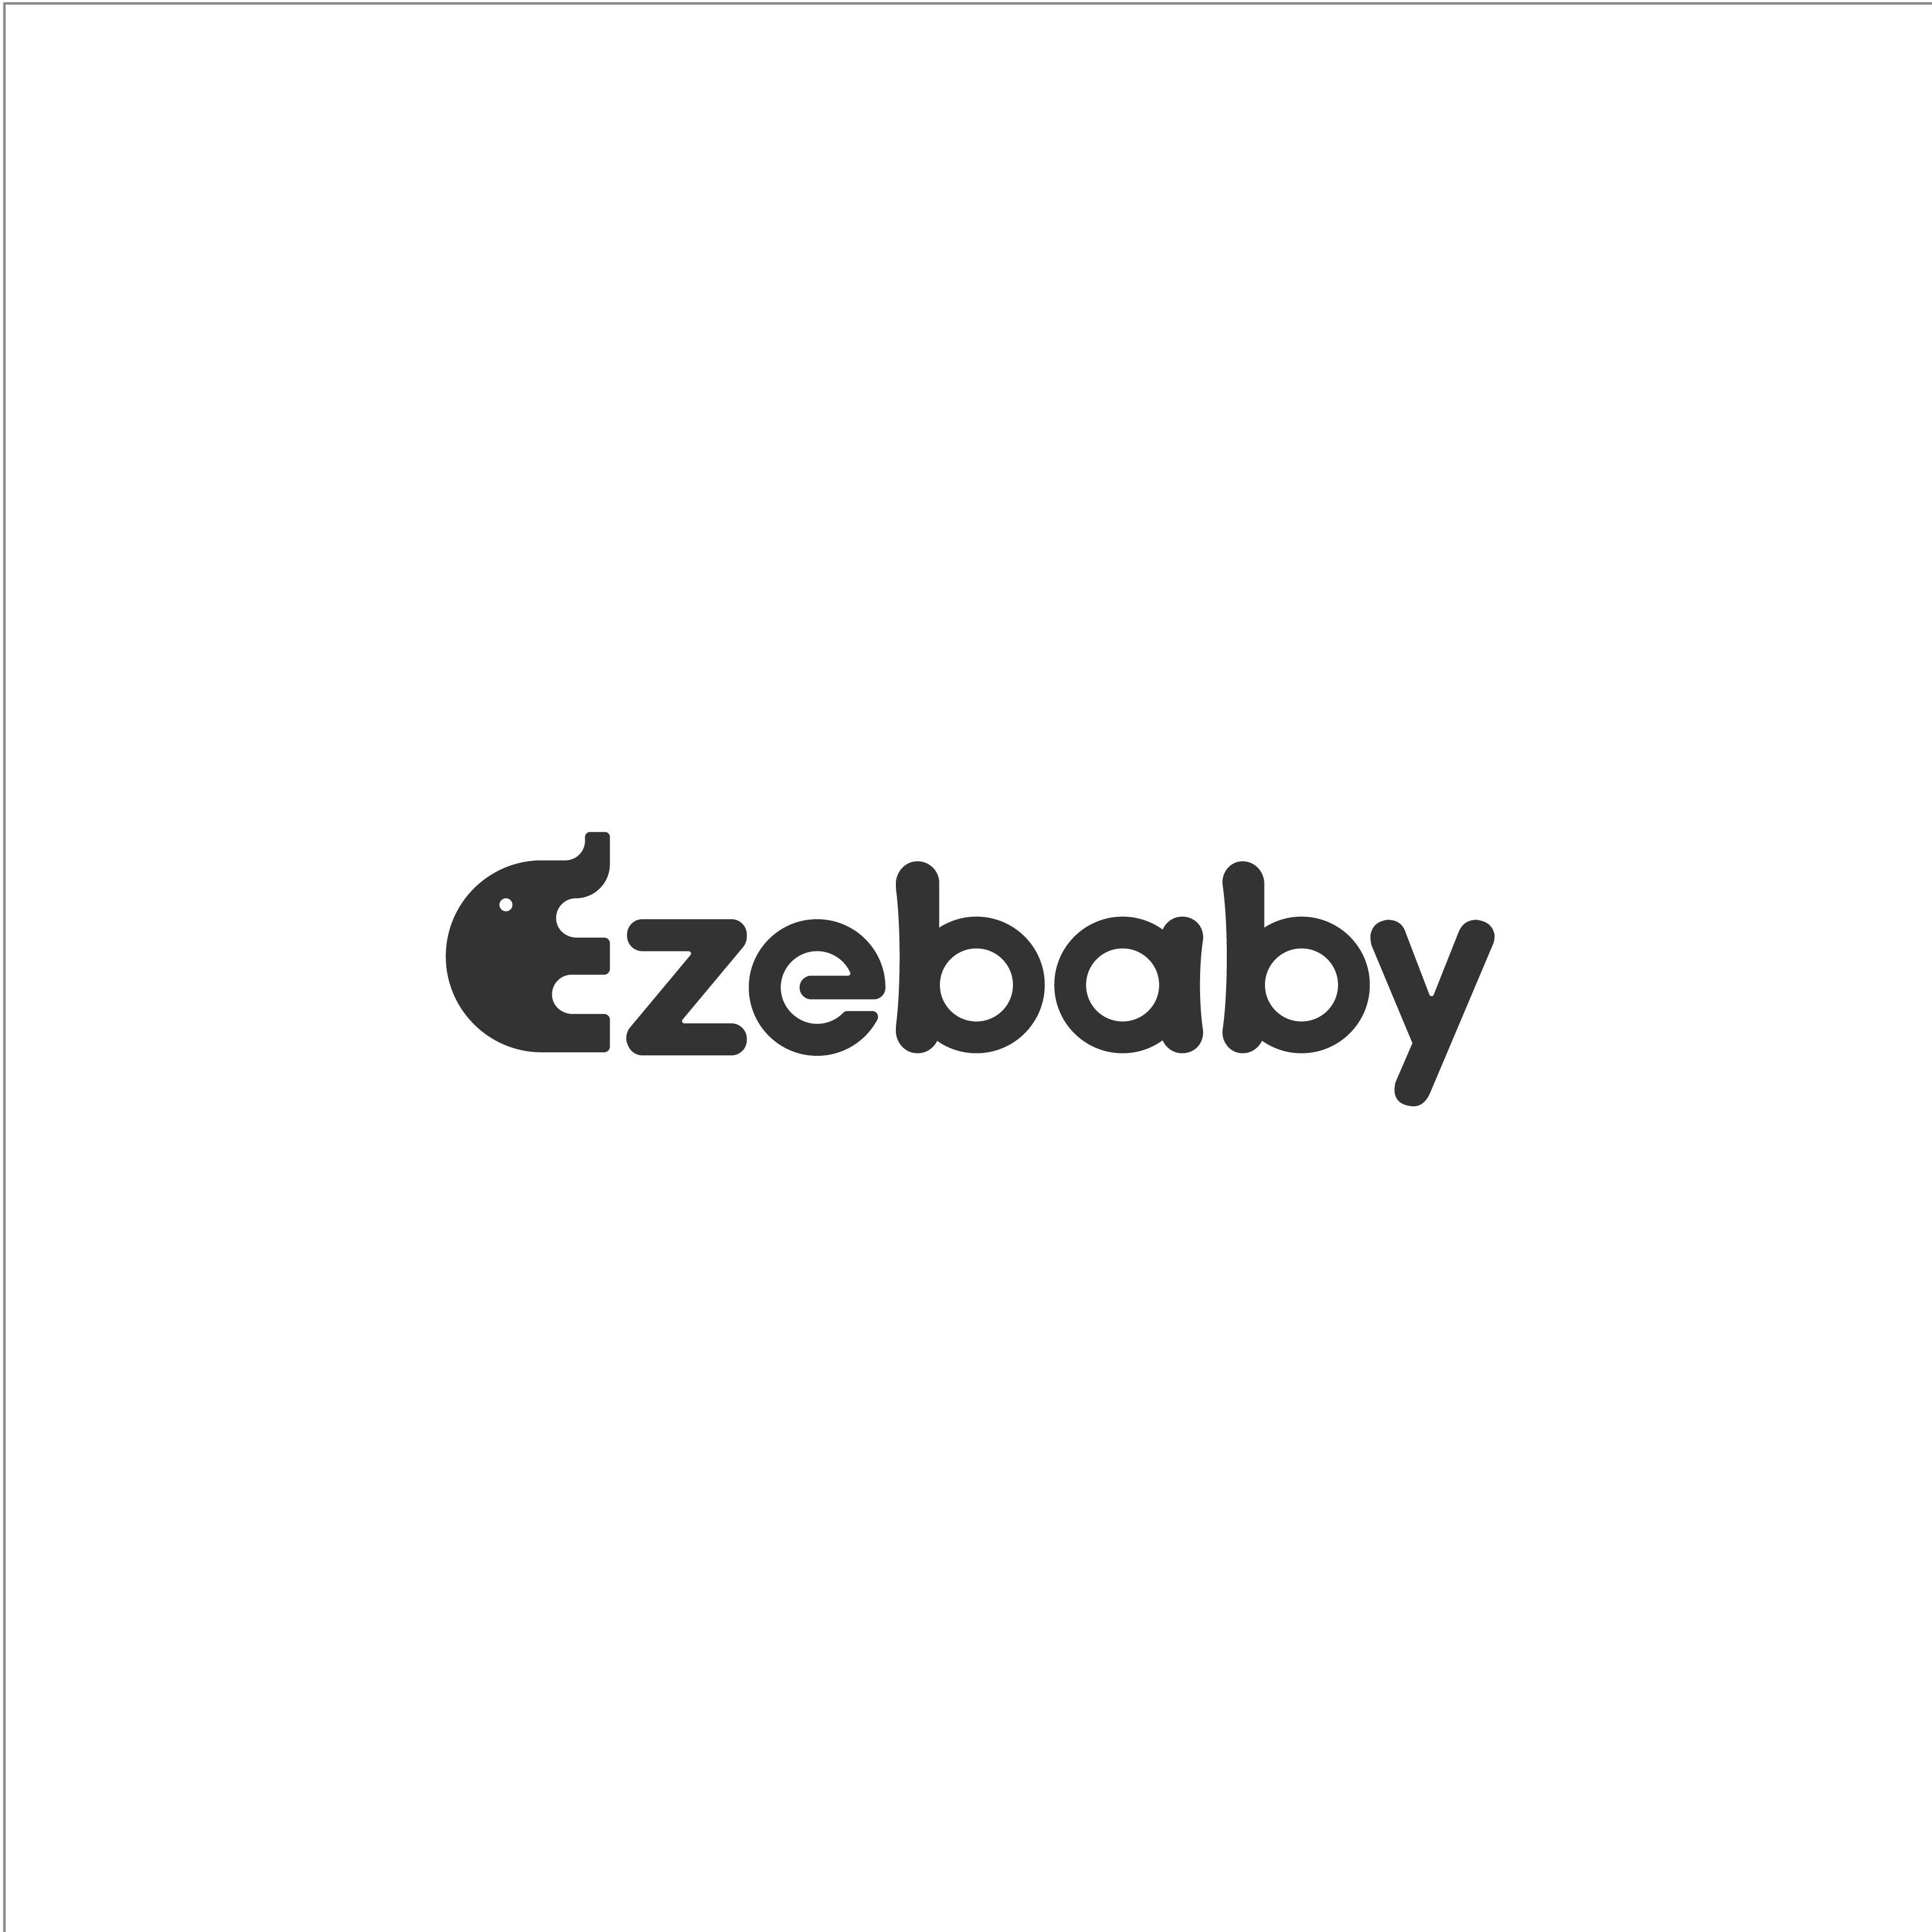 Ezebaby